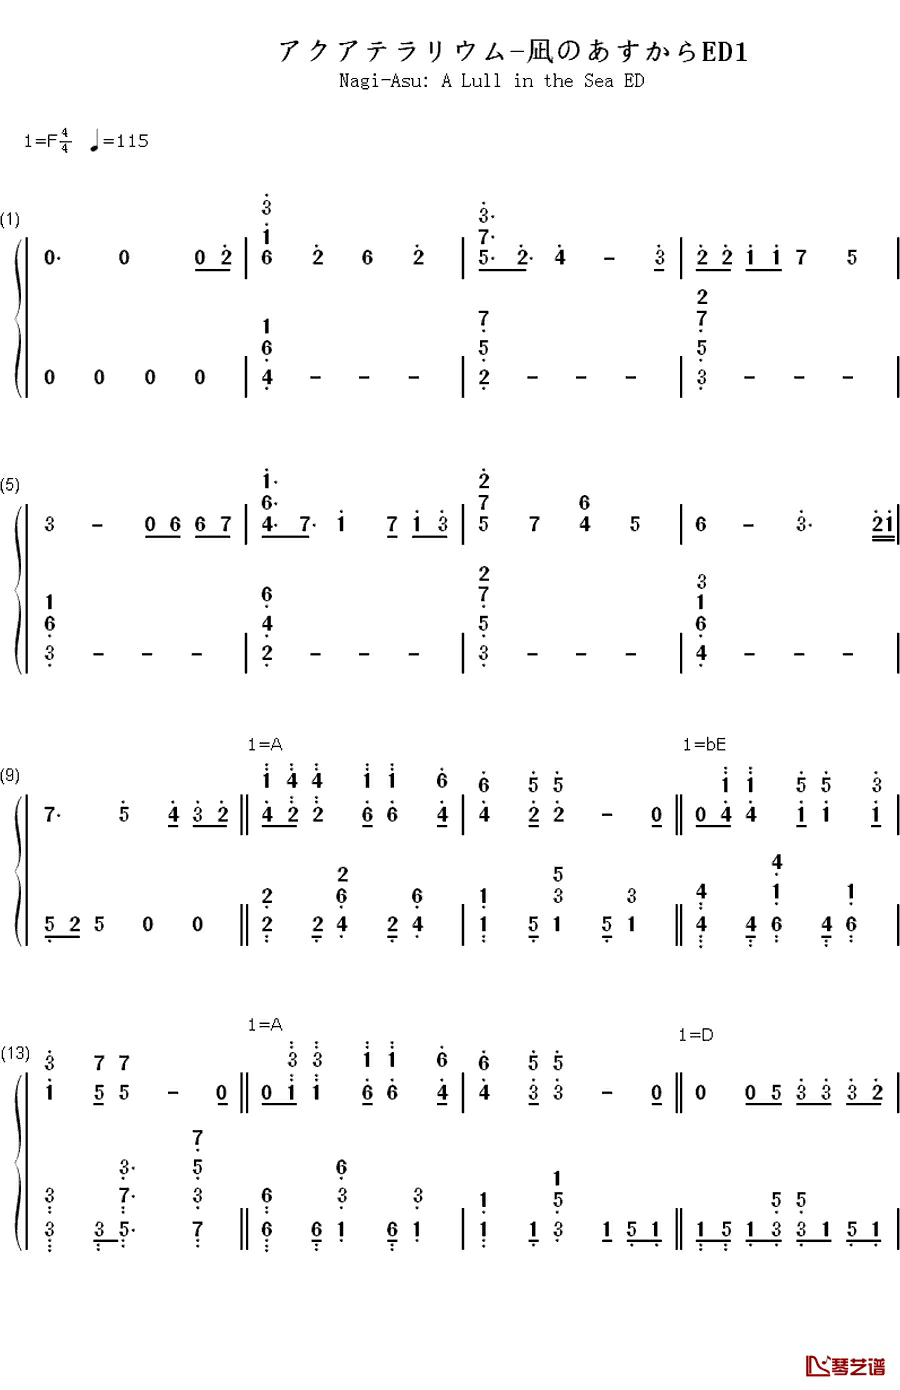 アクアテラリウム钢琴简谱-数字双手-やなぎなぎ
1